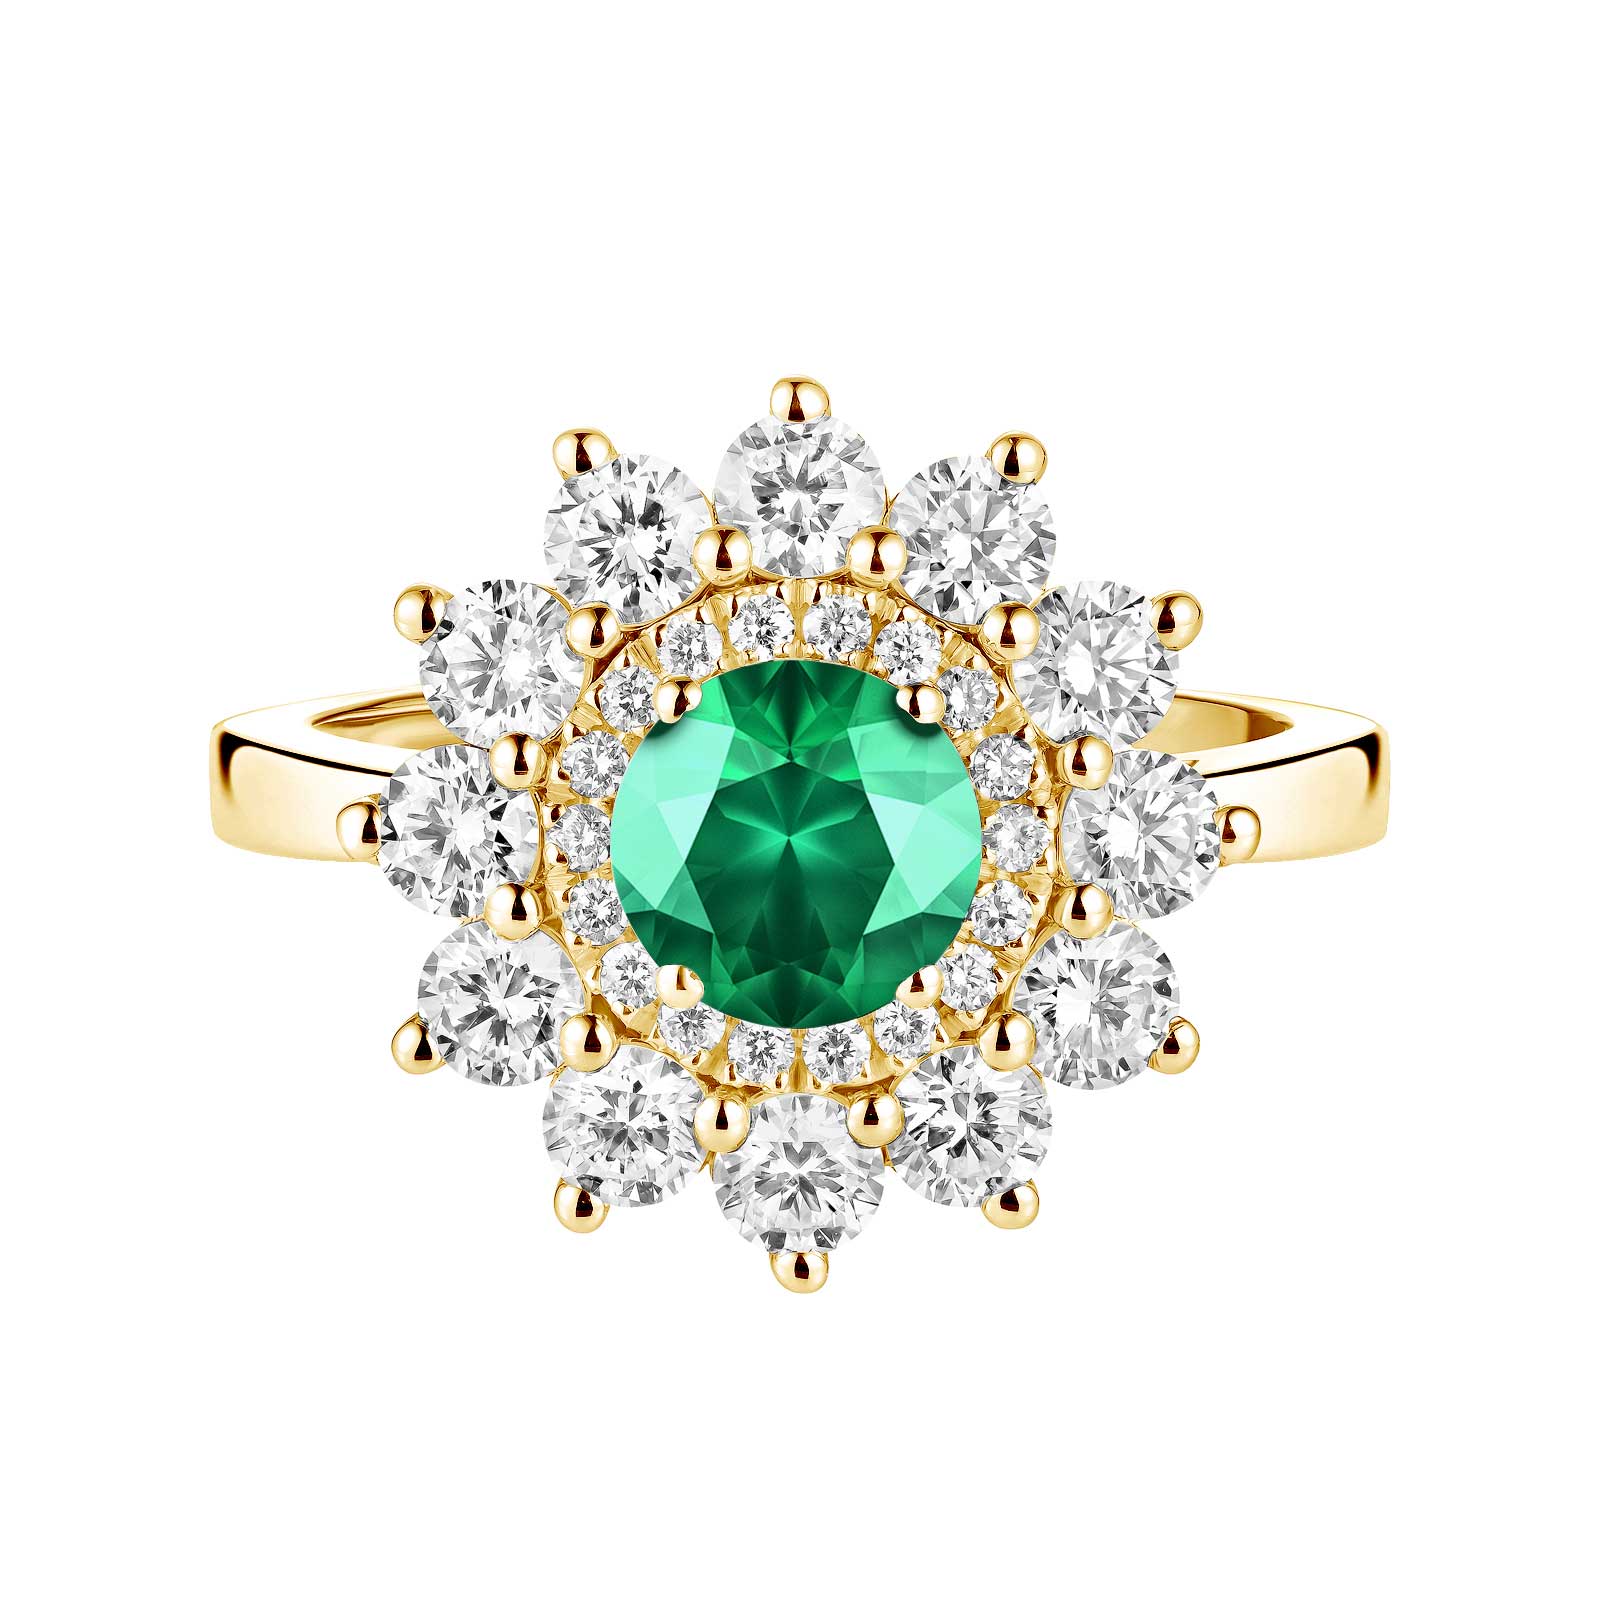 Ring Gelbgold Smaragdgrün und diamanten Lefkos 6 mm 1